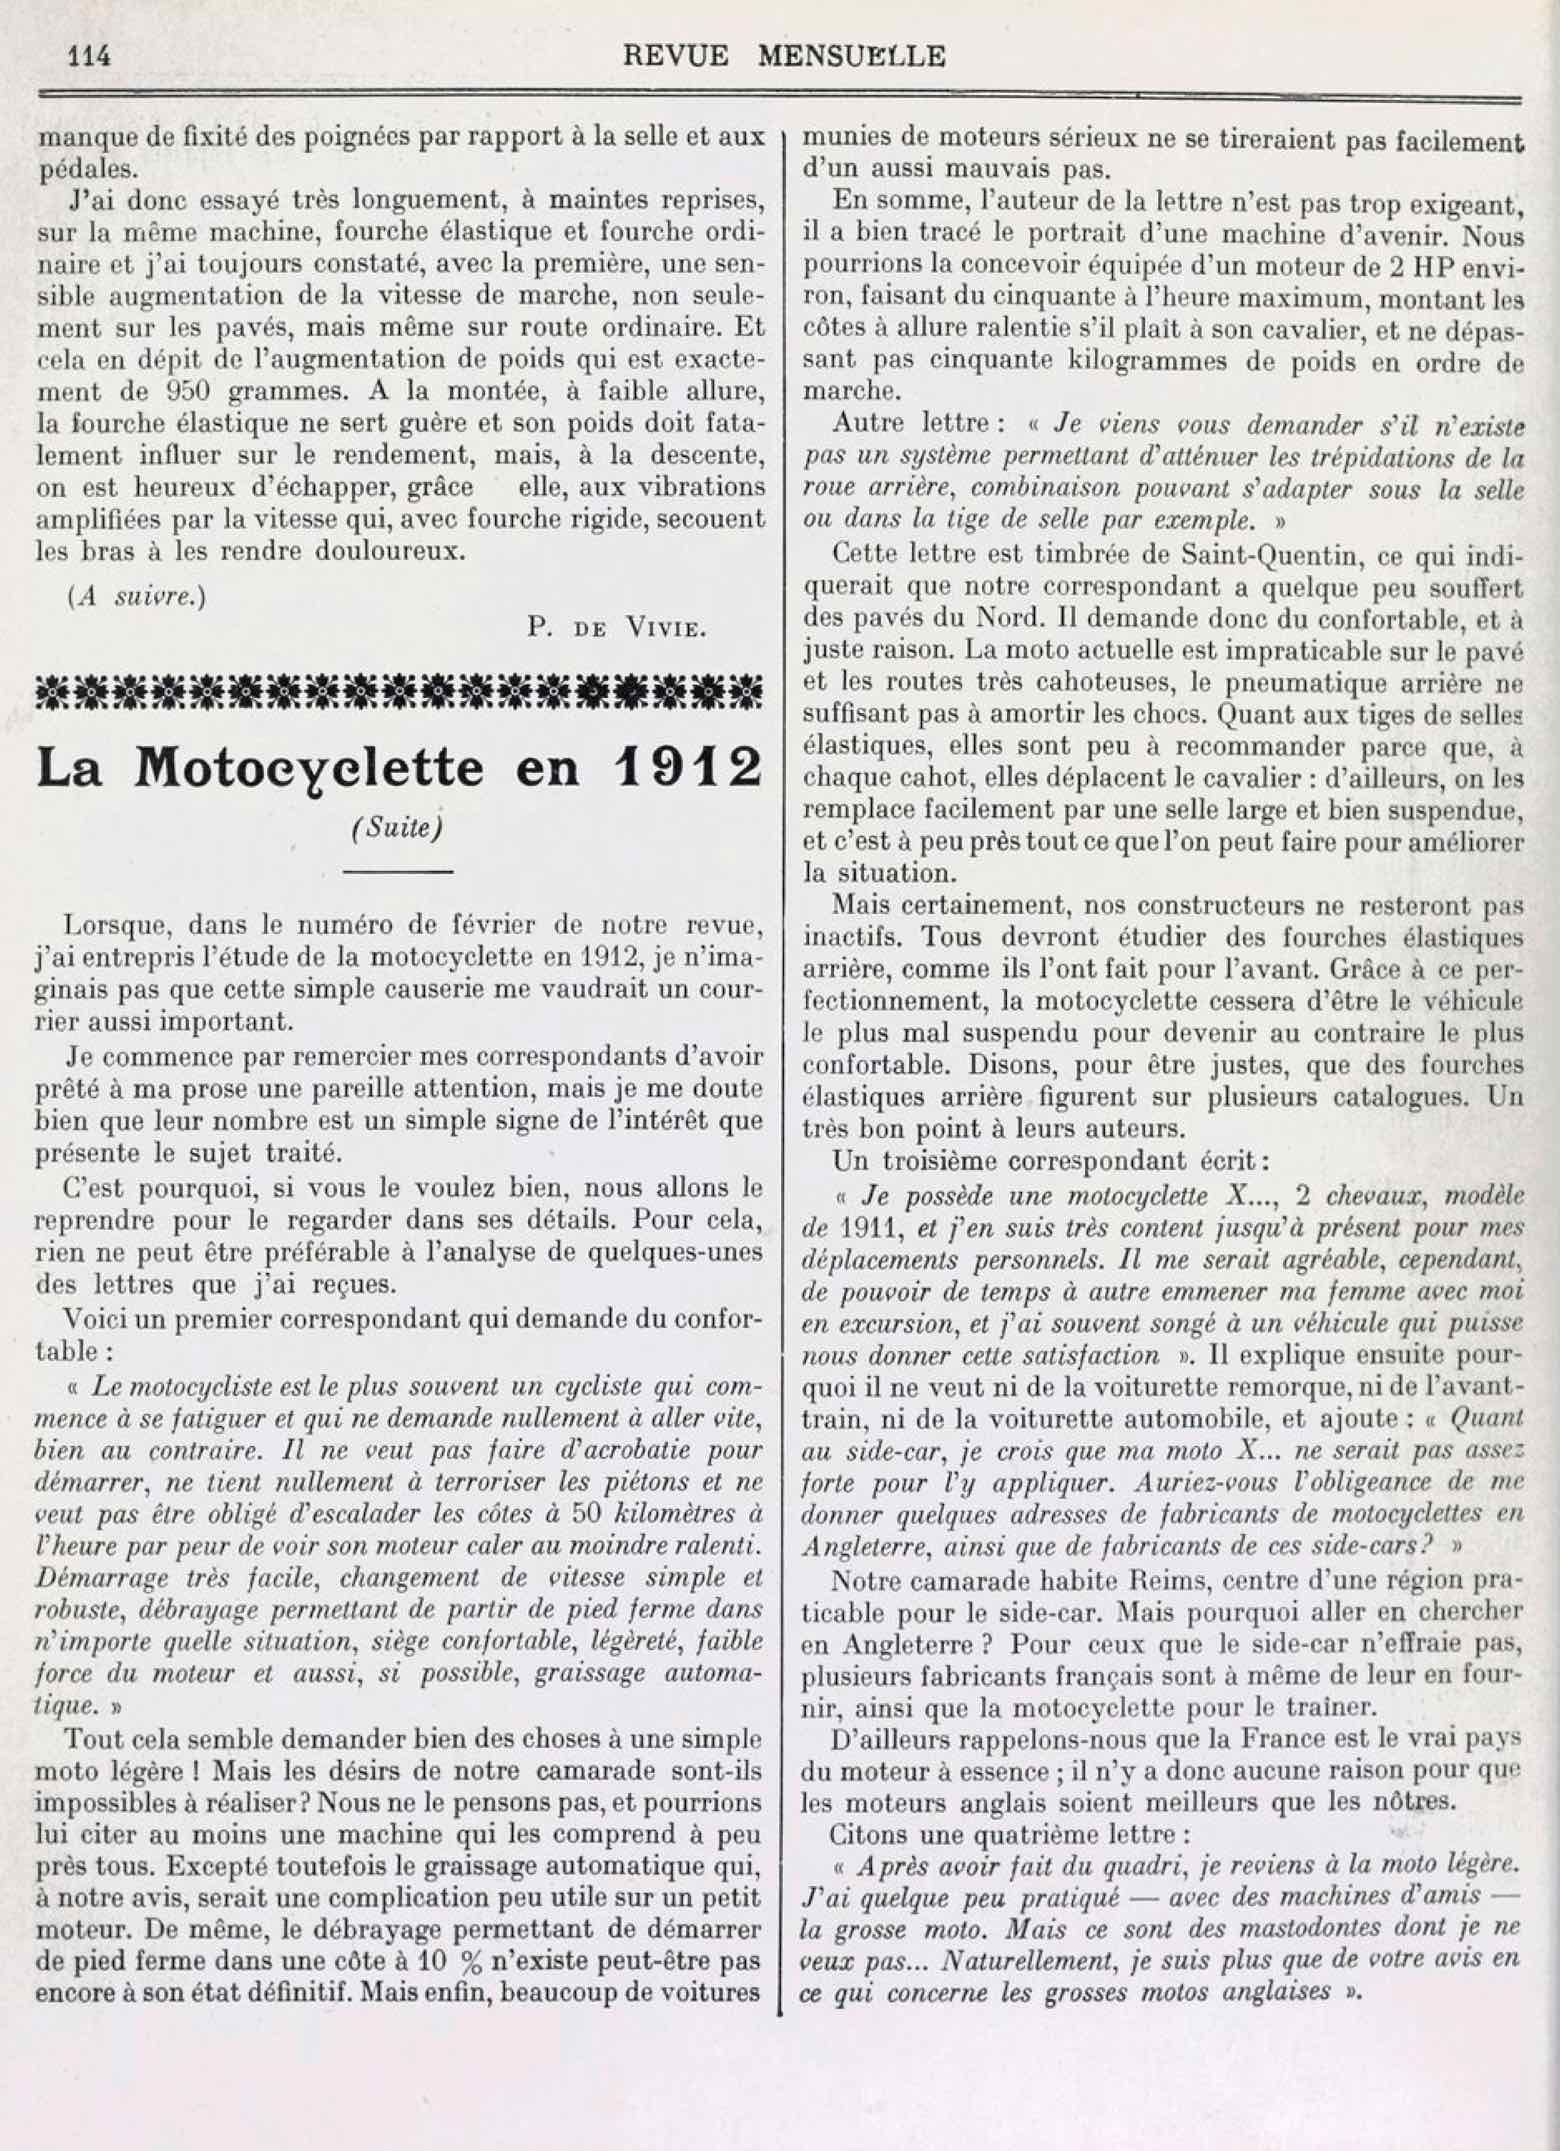 T.C.F. Revue Mensuelle March 1912 - Nos Ennemis (part I) scan 3 main image